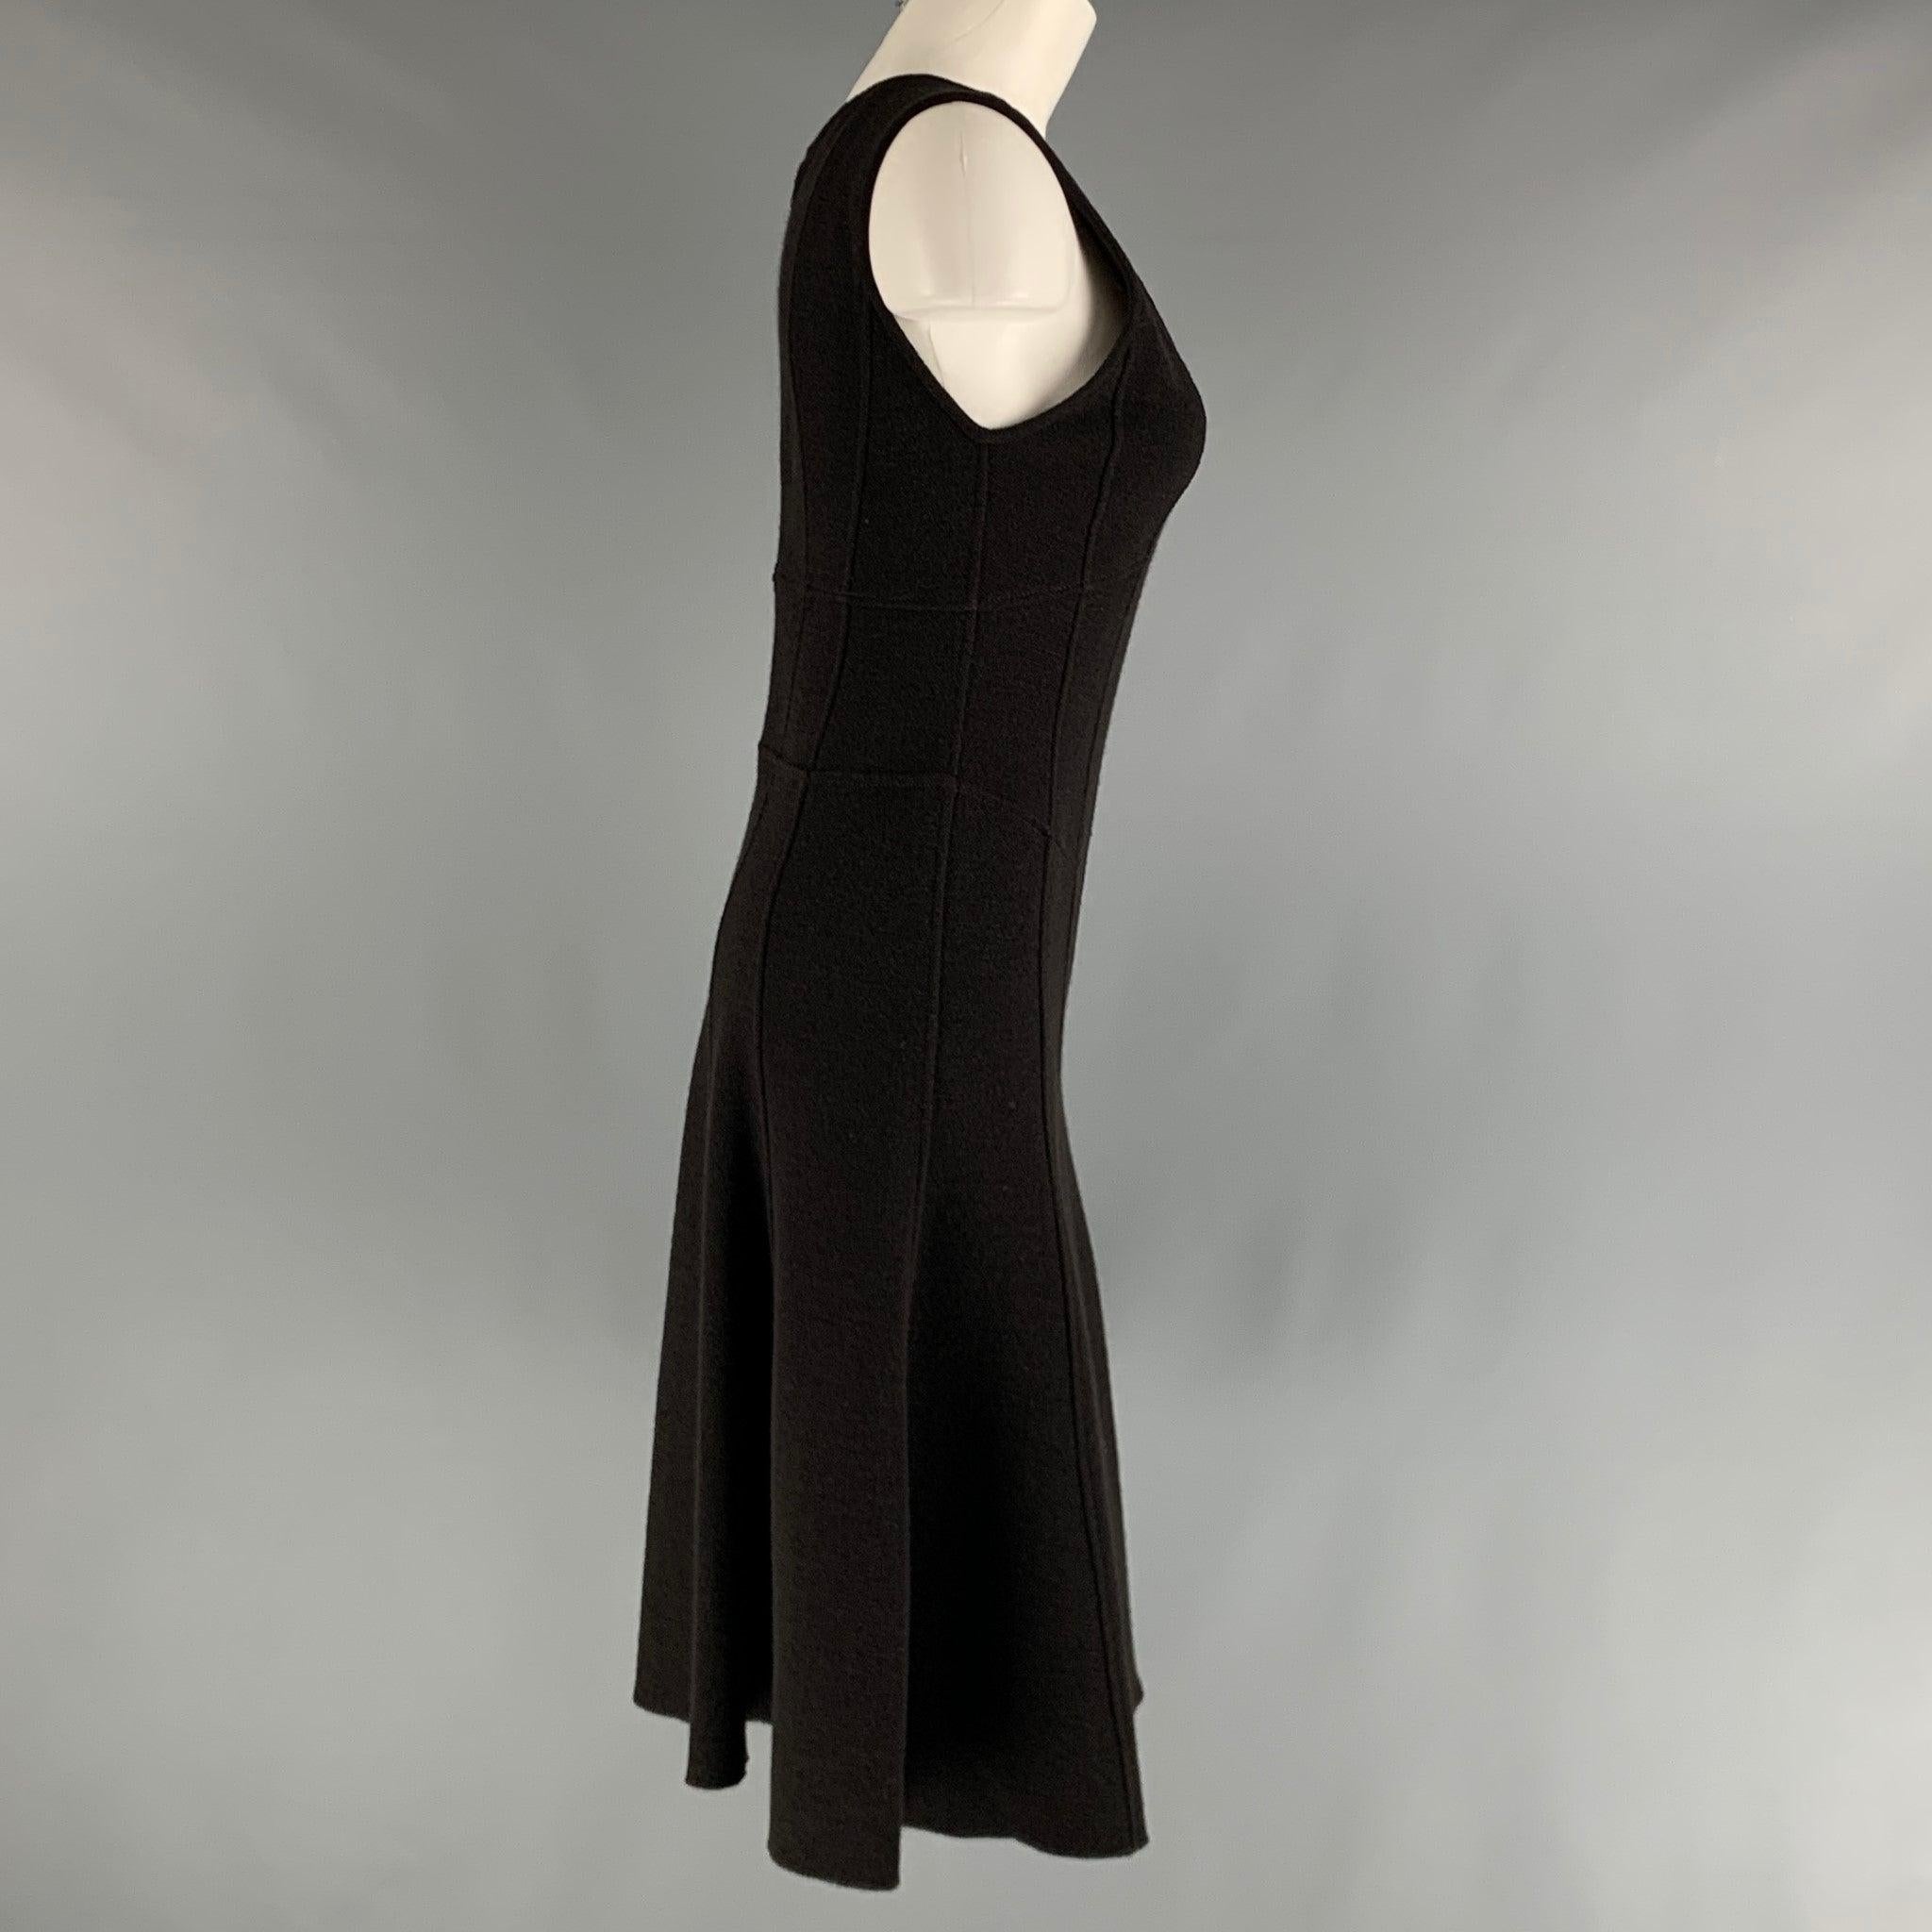 La robe ARMANI COLLEZIONI est réalisée en maille de laine noire et présente un style a-line, une encolure dégagée et une fermeture à glissière dans le dos. Fabriqué en Italie. Très bon état. 

Marqué :  4 

Mesures : 
 
Épaule : 14 pouces Buste : 32